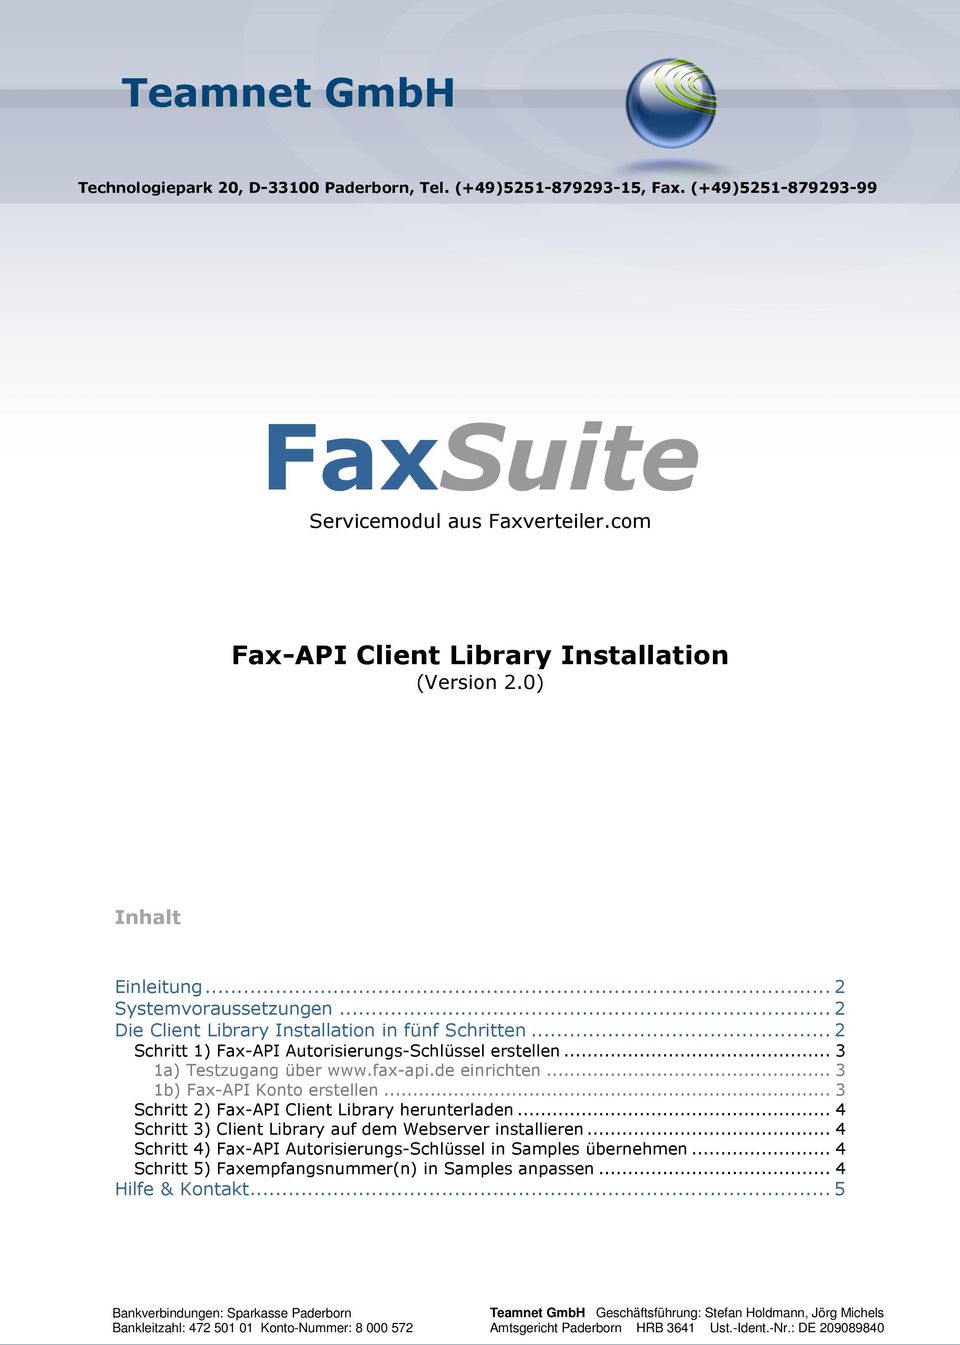 de einrichten... 3 1b) Fax-API Konto erstellen... 3 Schritt 2) Fax-API Client Library herunterladen... 4 Schritt 3) Client Library auf dem Webserver installieren.